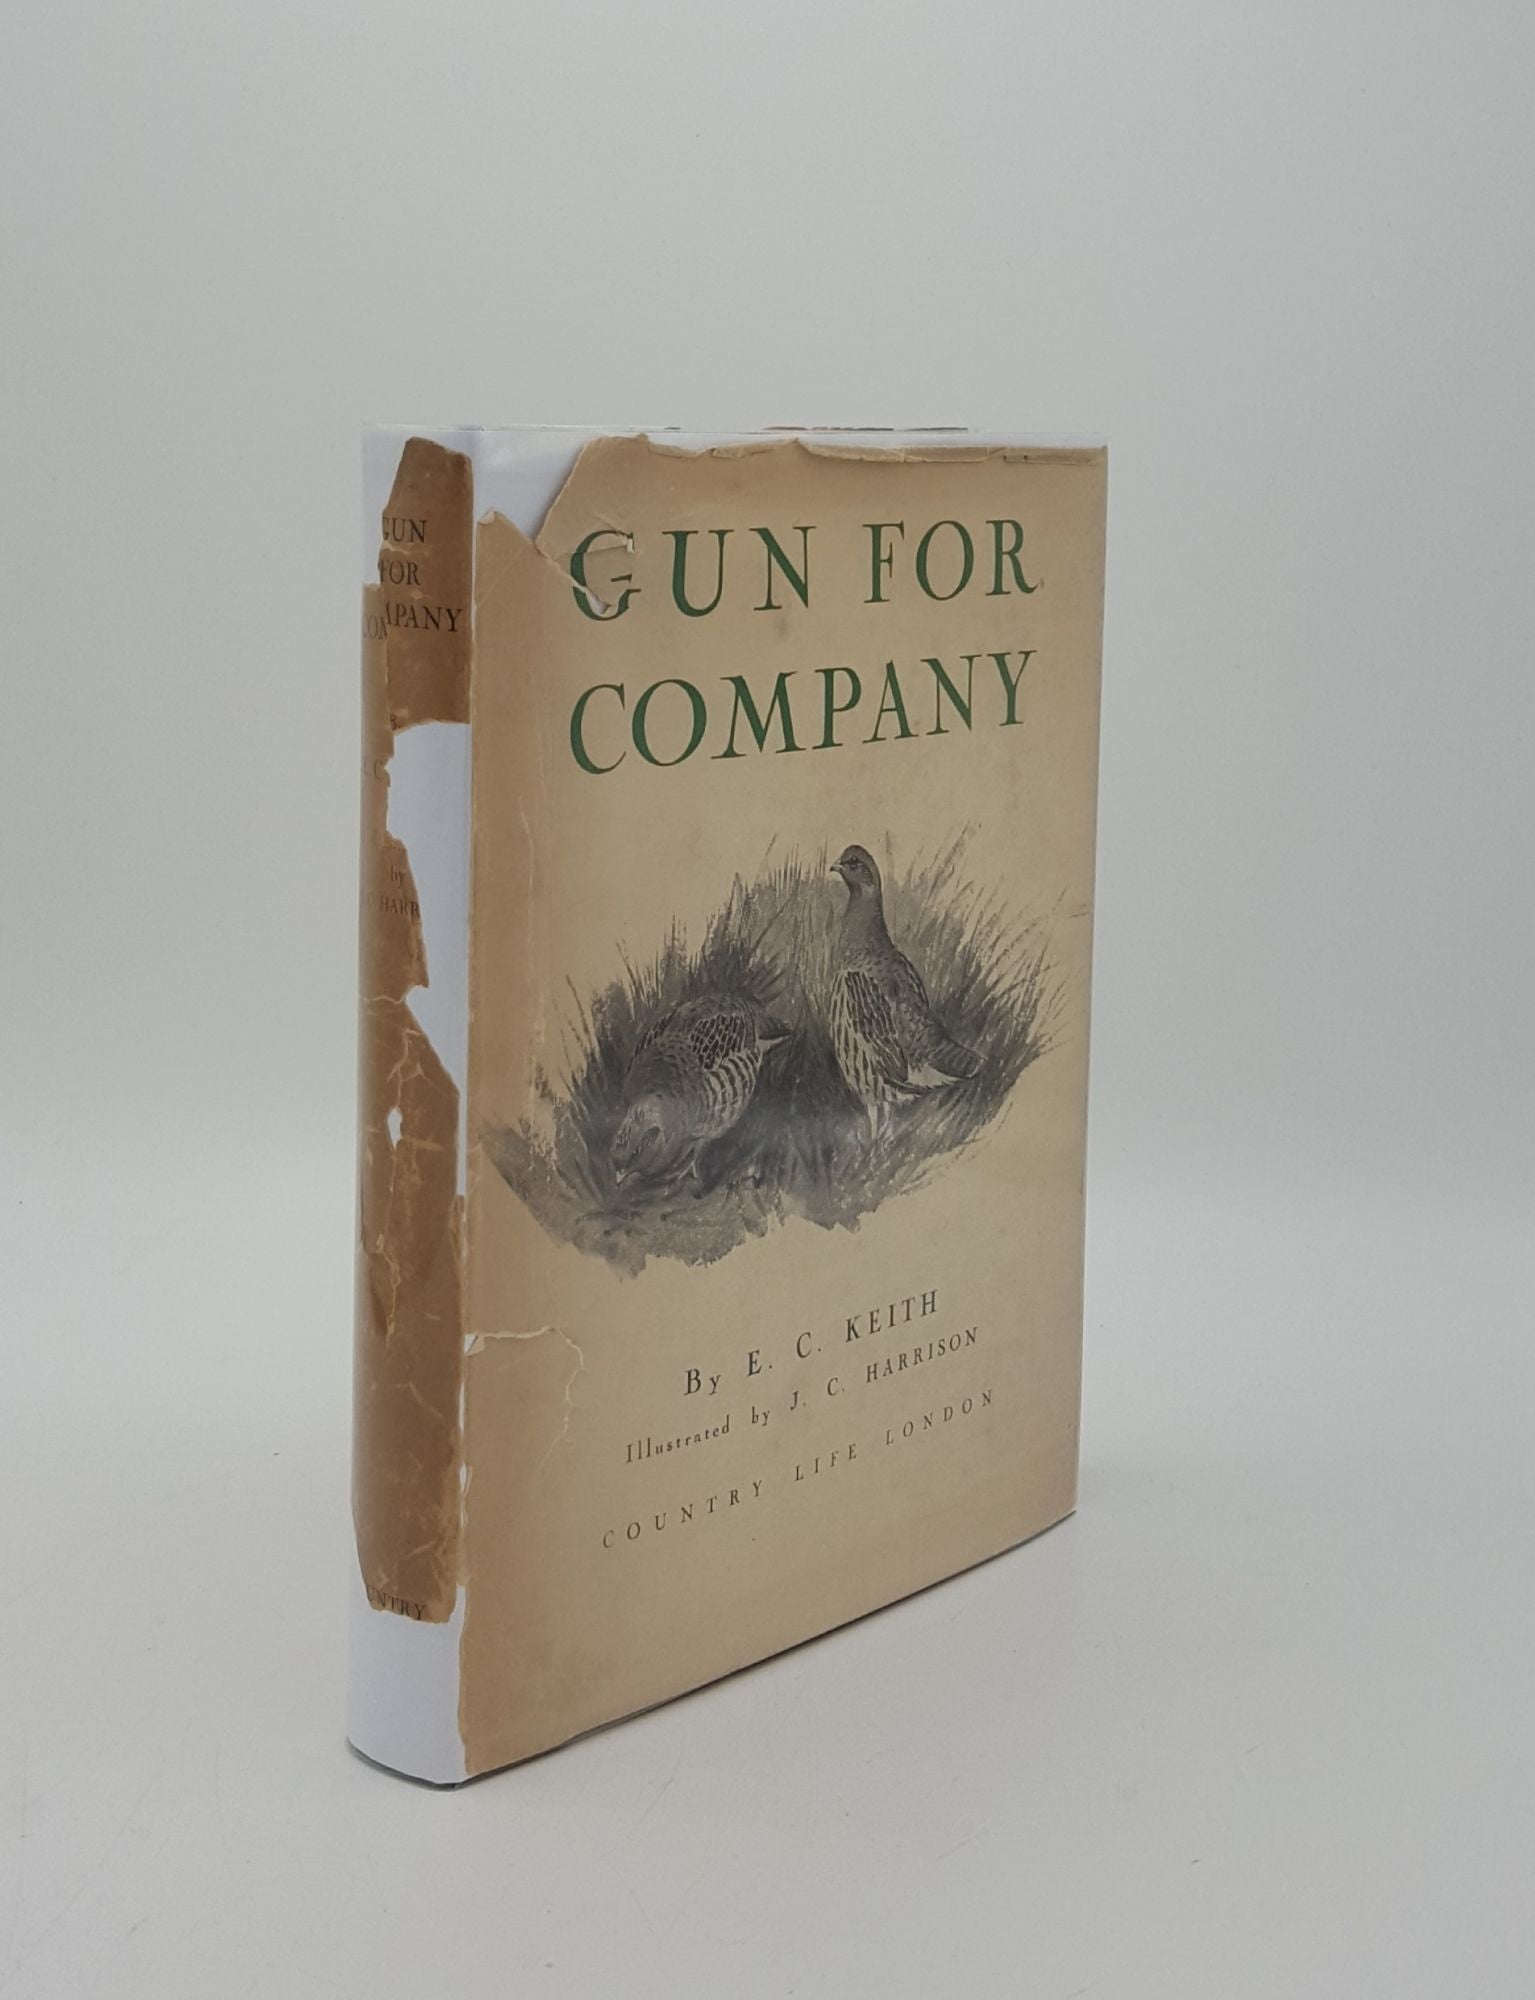 KEITH E.C., HARRISON J.C. - Gun for Company